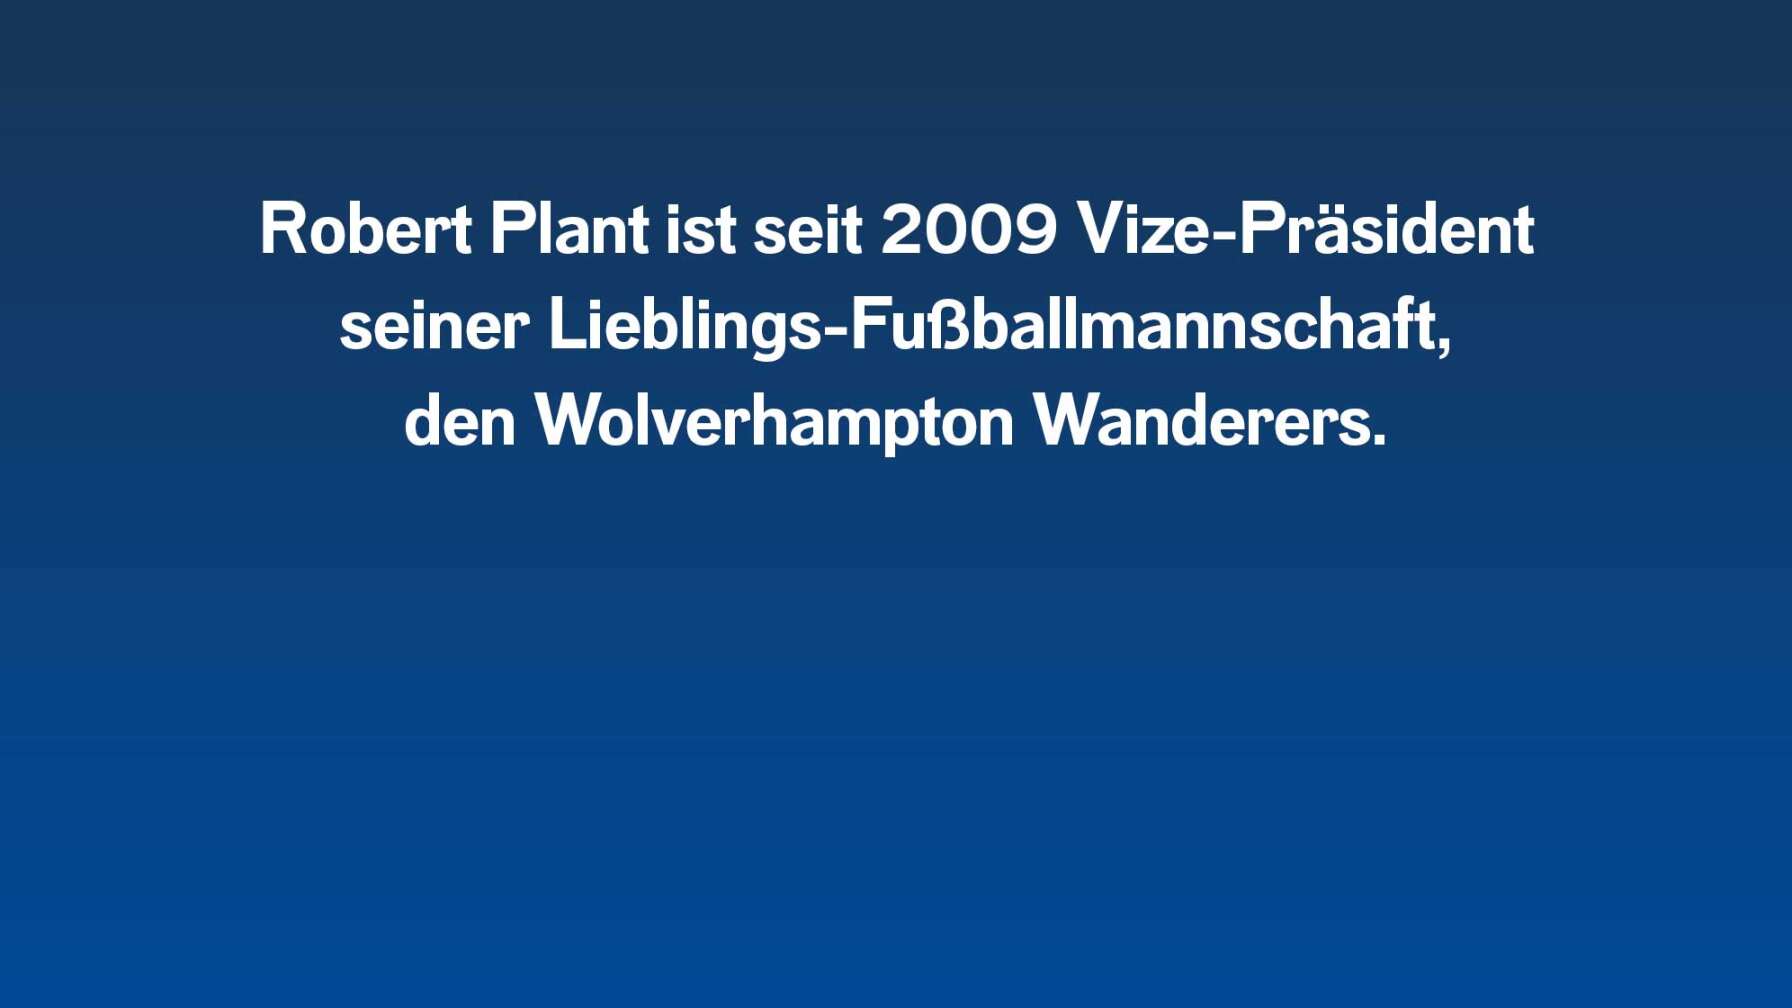 Robert Plant ist seit 2009 Vize-Präsident seiner Lieblings-Fußballmannschaft, den Wolverhampton Wanderers.